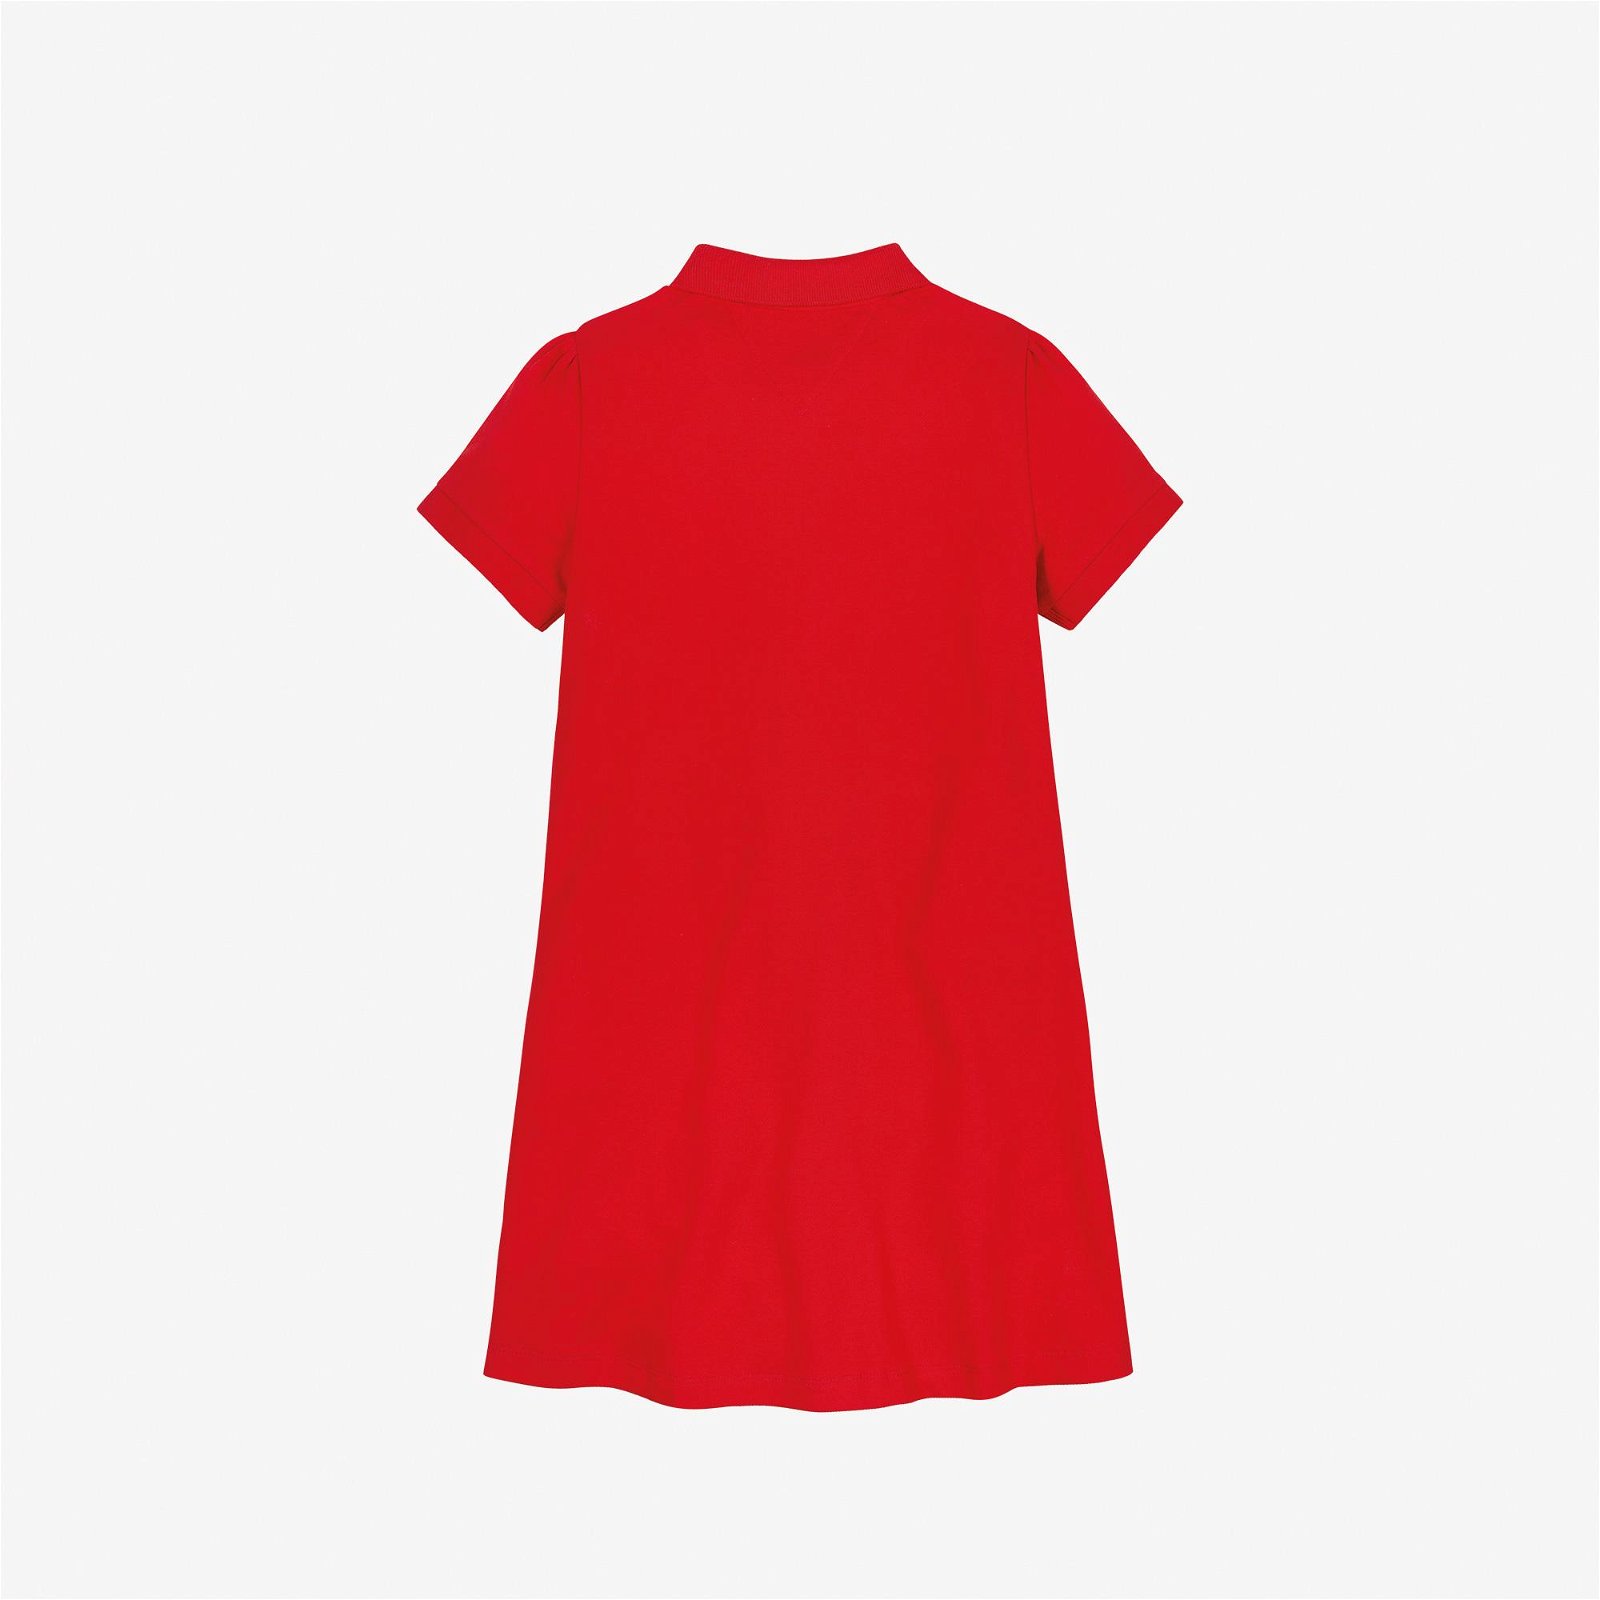 Tommy Hilfiger Polo Kız Çocuk Kırmızı Elbise